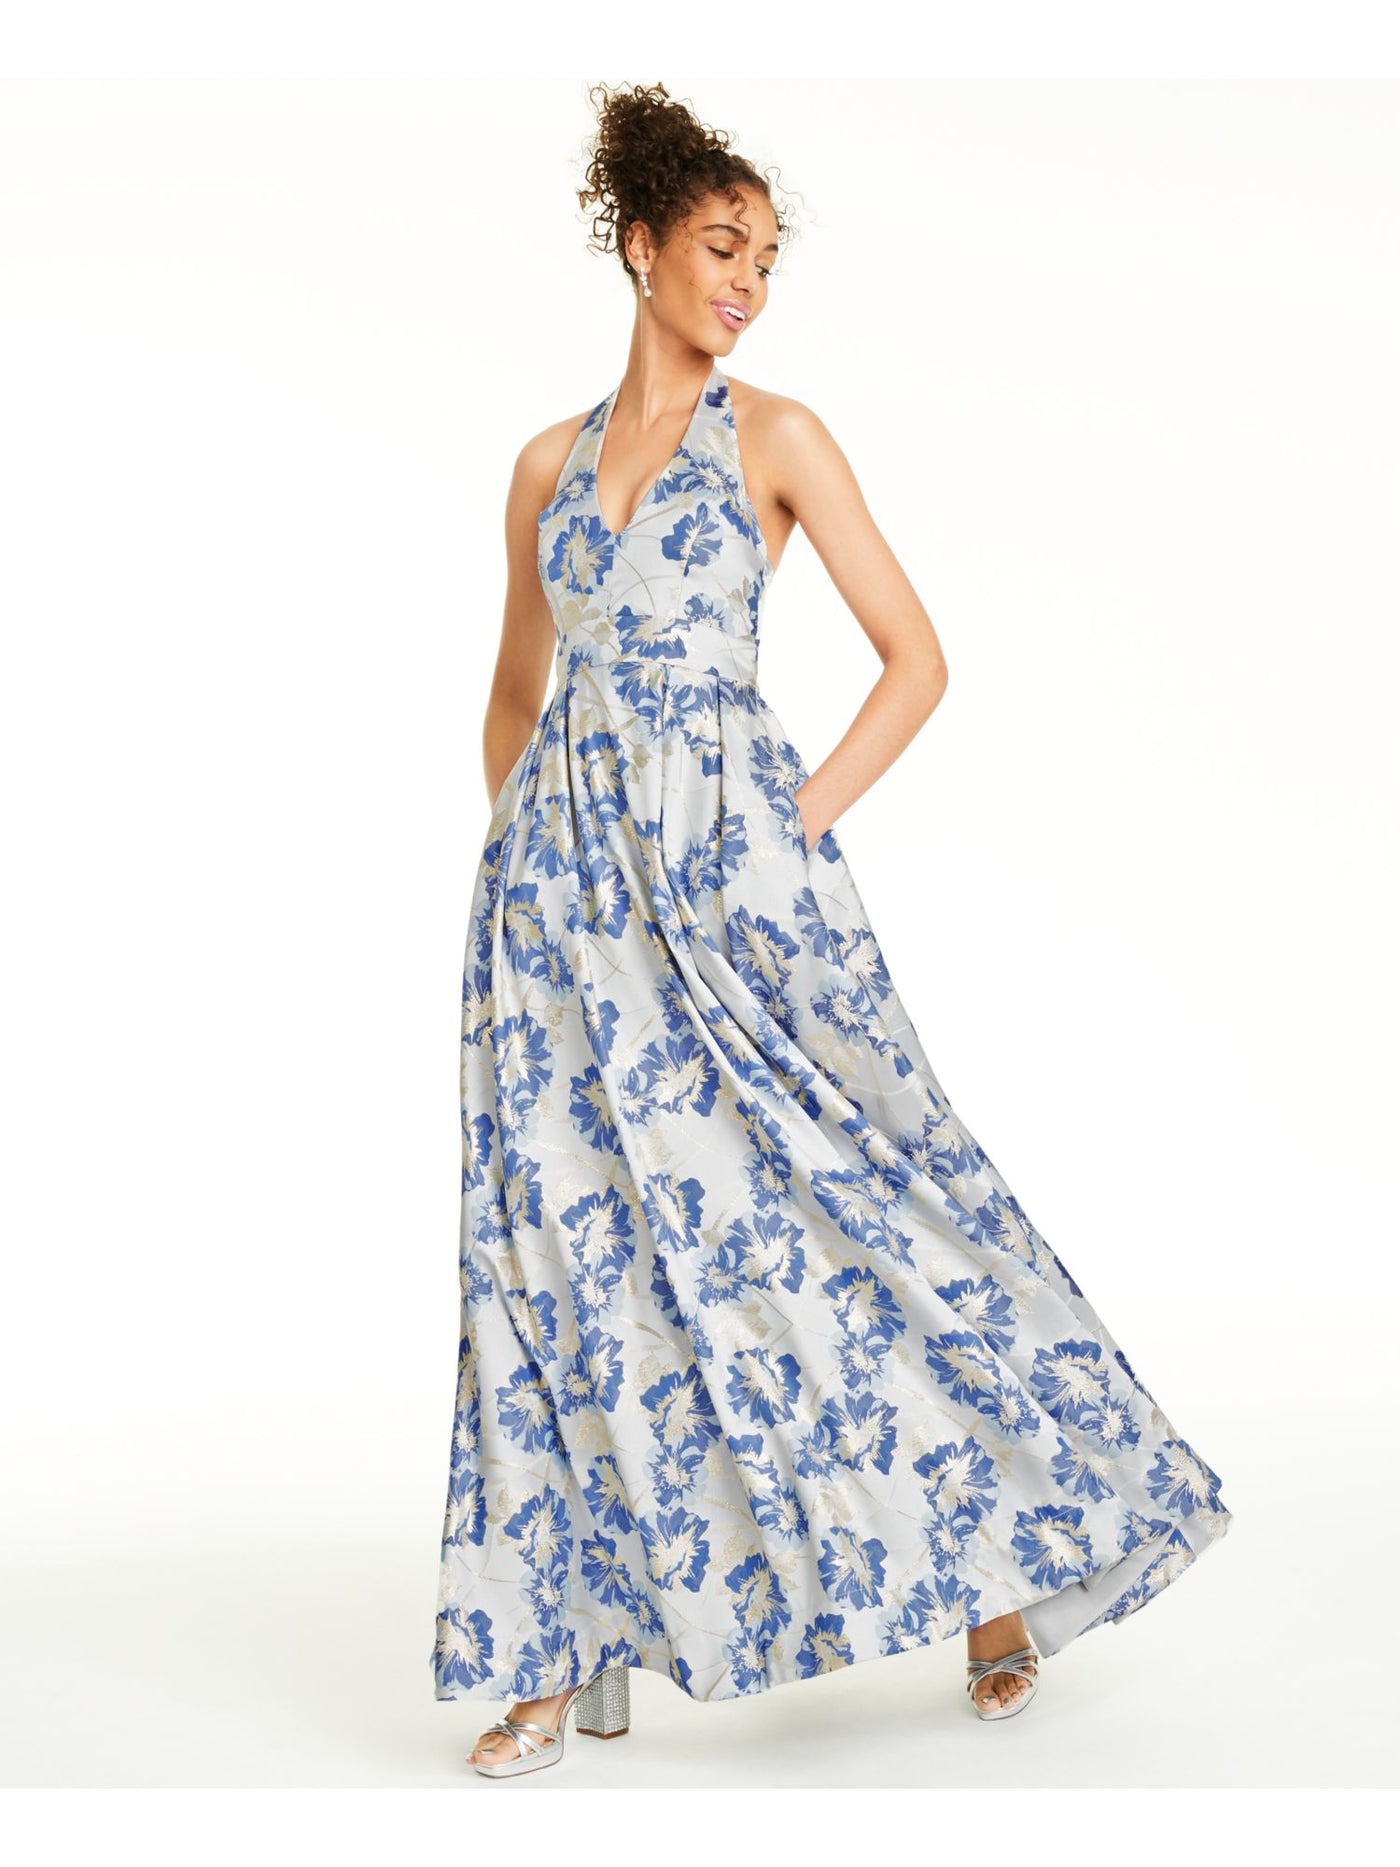 SPEECHLESS Womens Blue Floral Sleeveless V Neck Full-Length Formal Fit + Flare Dress Juniors 1